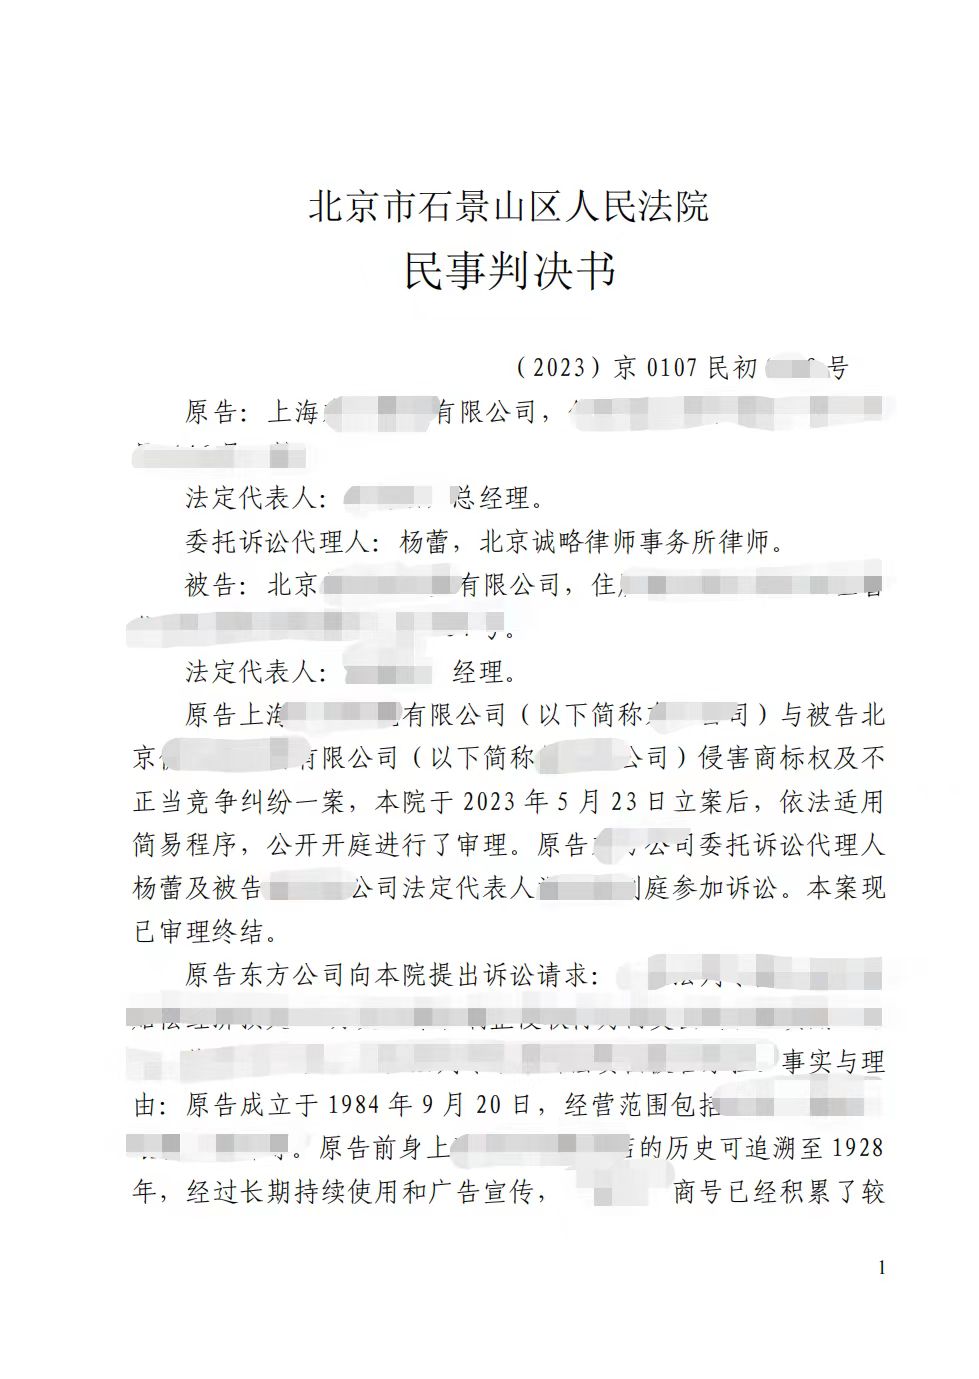 【北京市】上海某公司与北京某公司侵害商标权纠纷一案